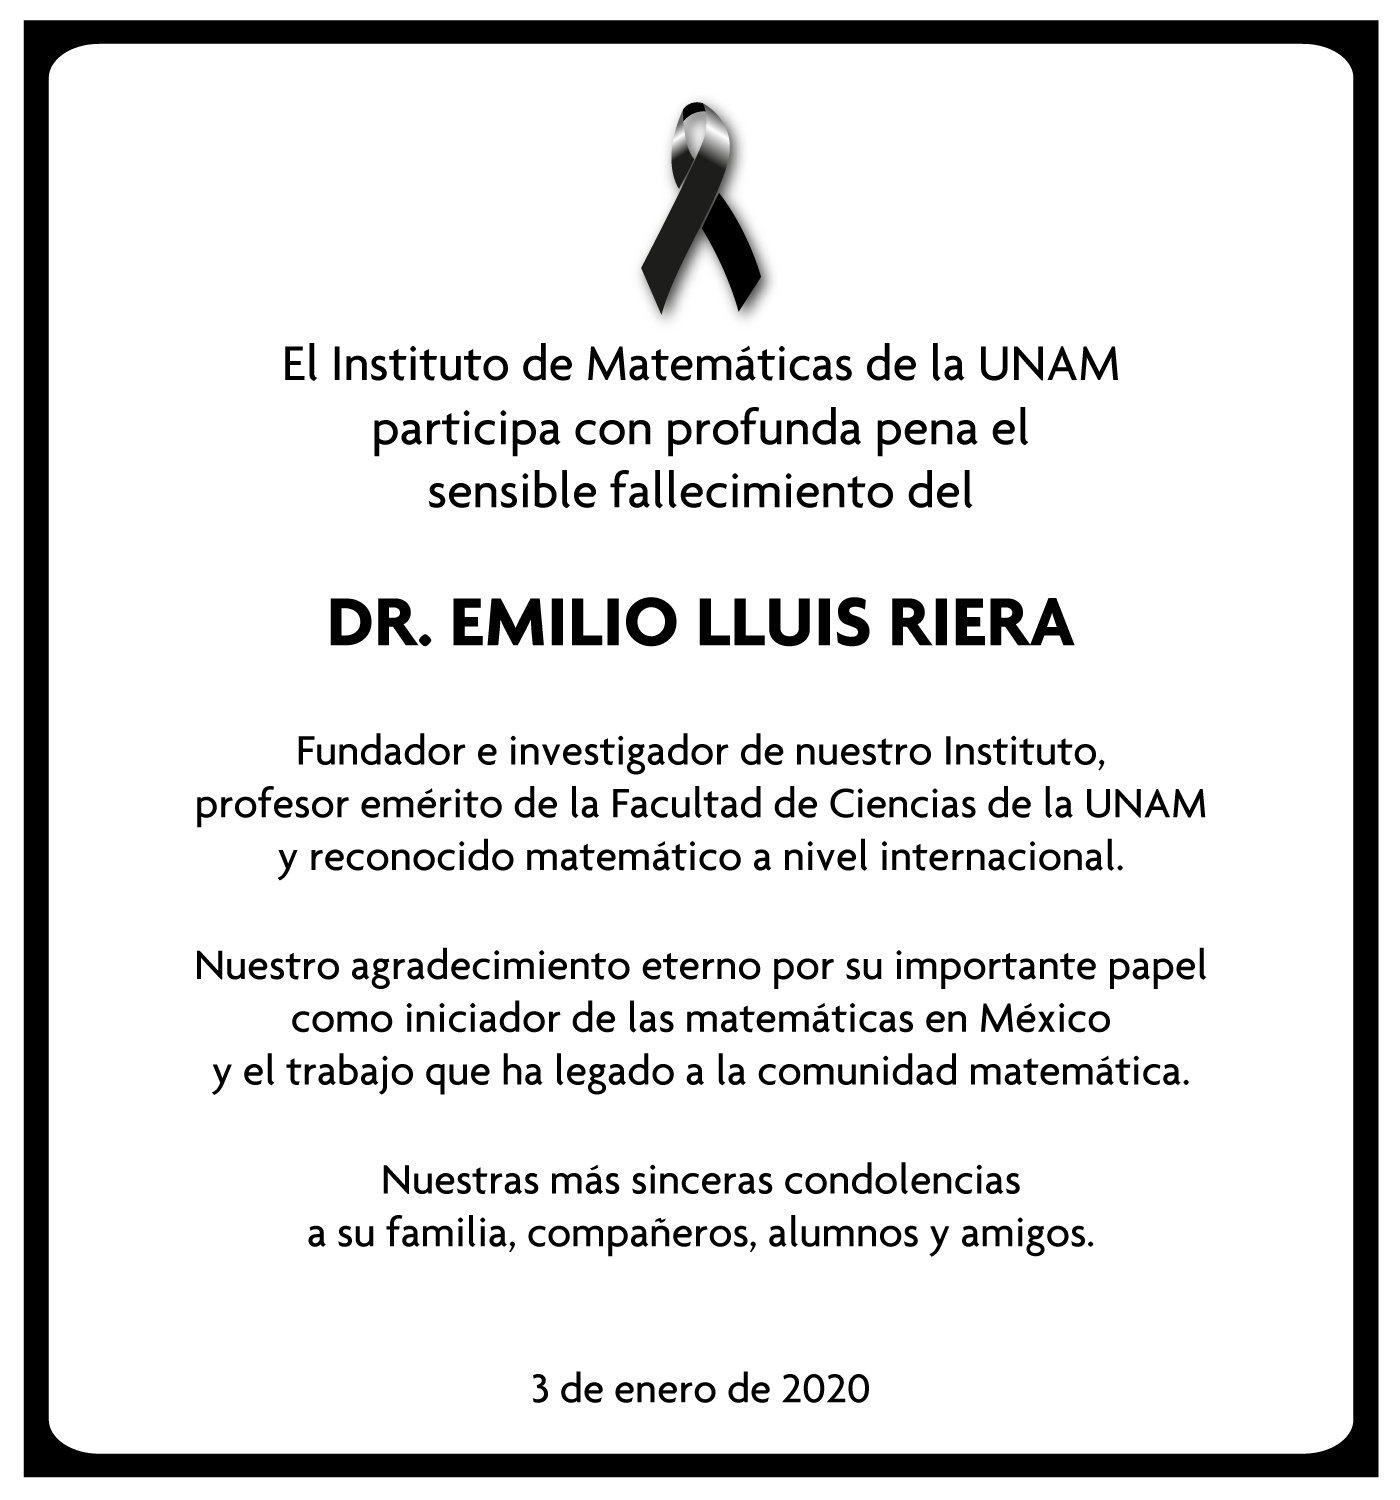 Fallece el Dr. Emilio Lluis Riera, fundador del Instituto de Matemáticas